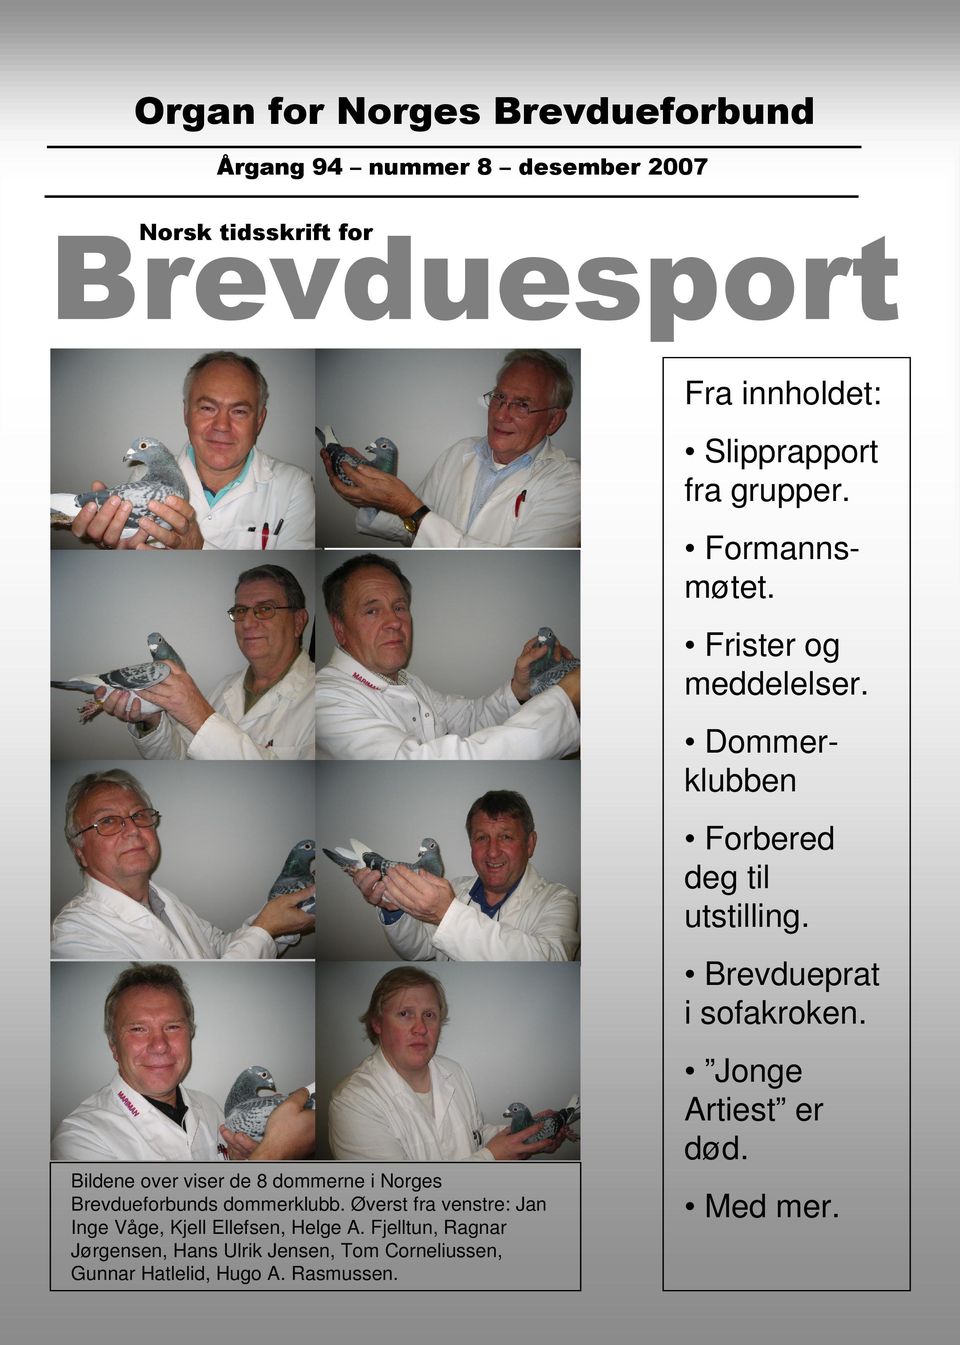 Jonge Artiest er død. Bildene over viser de 8 dommerne i Norges Brevdueforbunds dommerklubb.